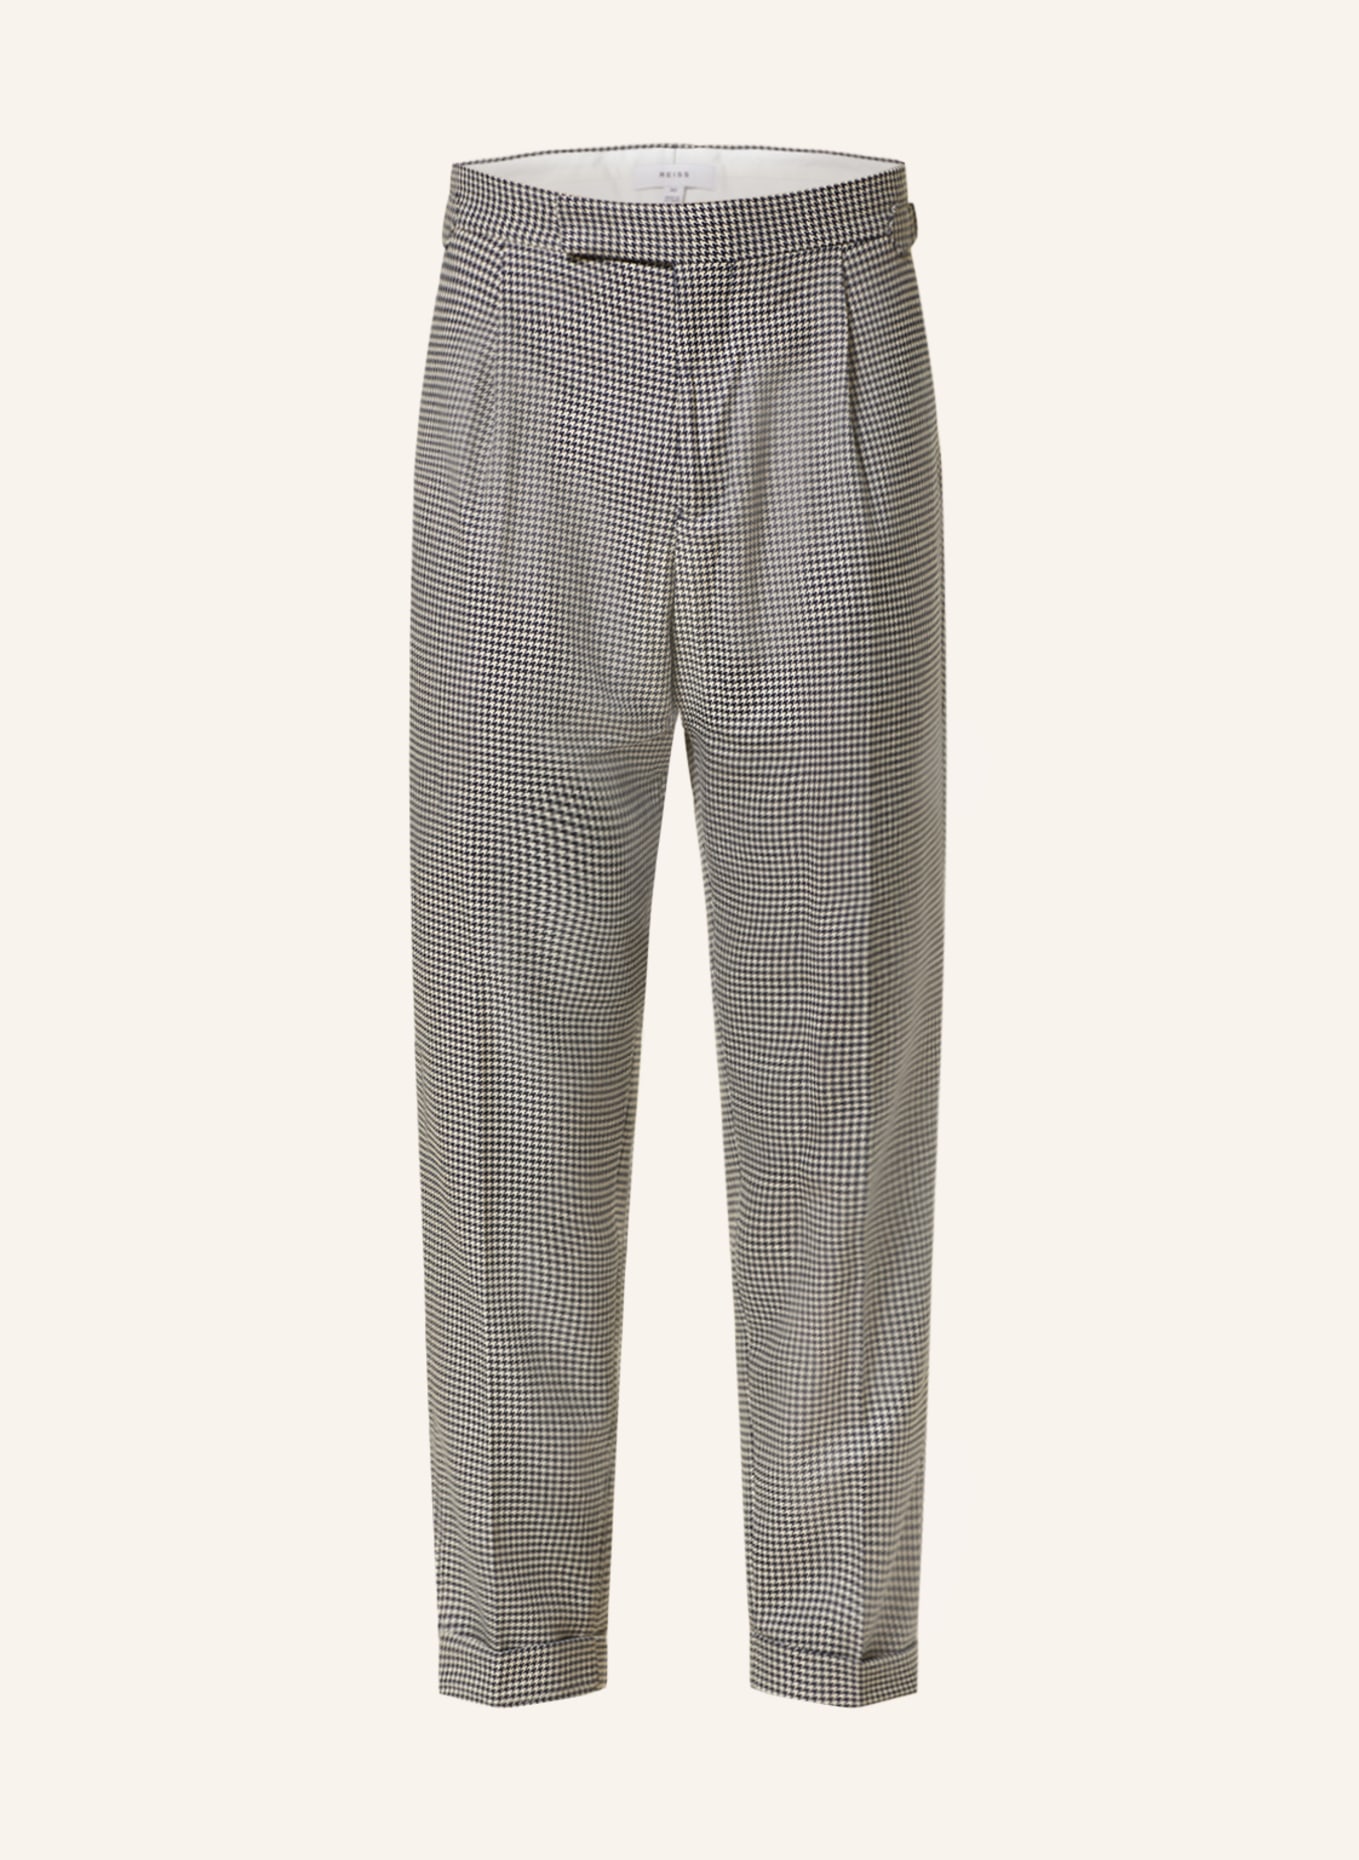 Buy Men's Grey Reiss Trousers Online | Next UK